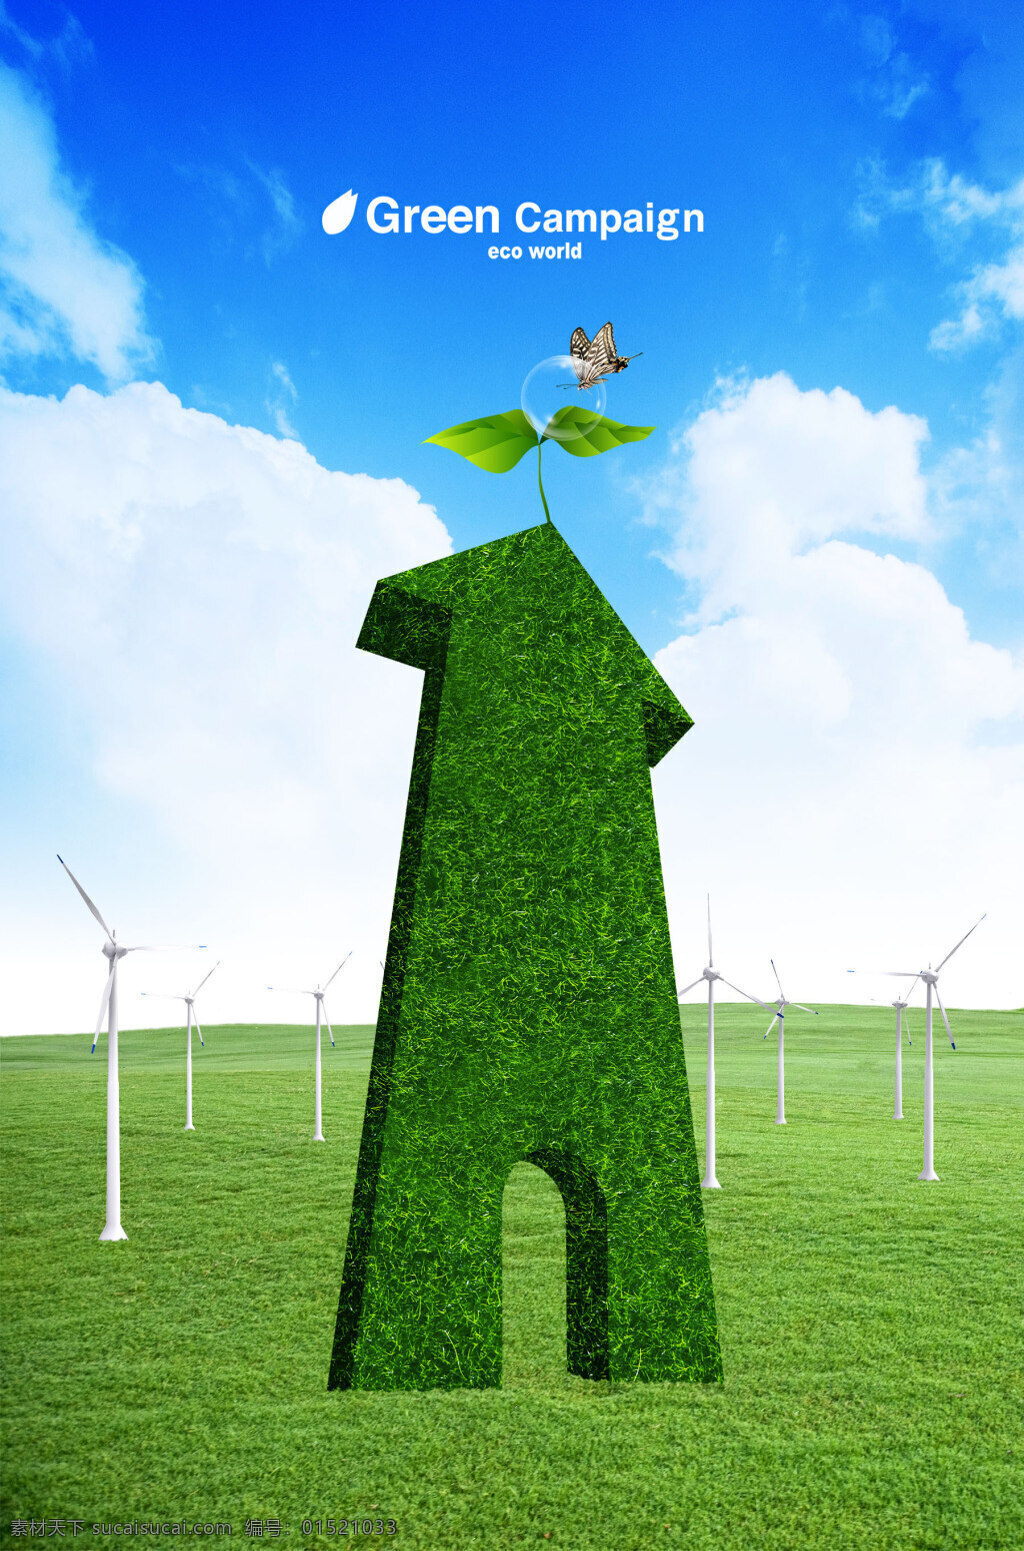 绿色环保 海报 模板 模板下载 草地 立体字 环保海报 生态环保 环境保护 公益广告海报 展板模板 广告设计模板 psd素材